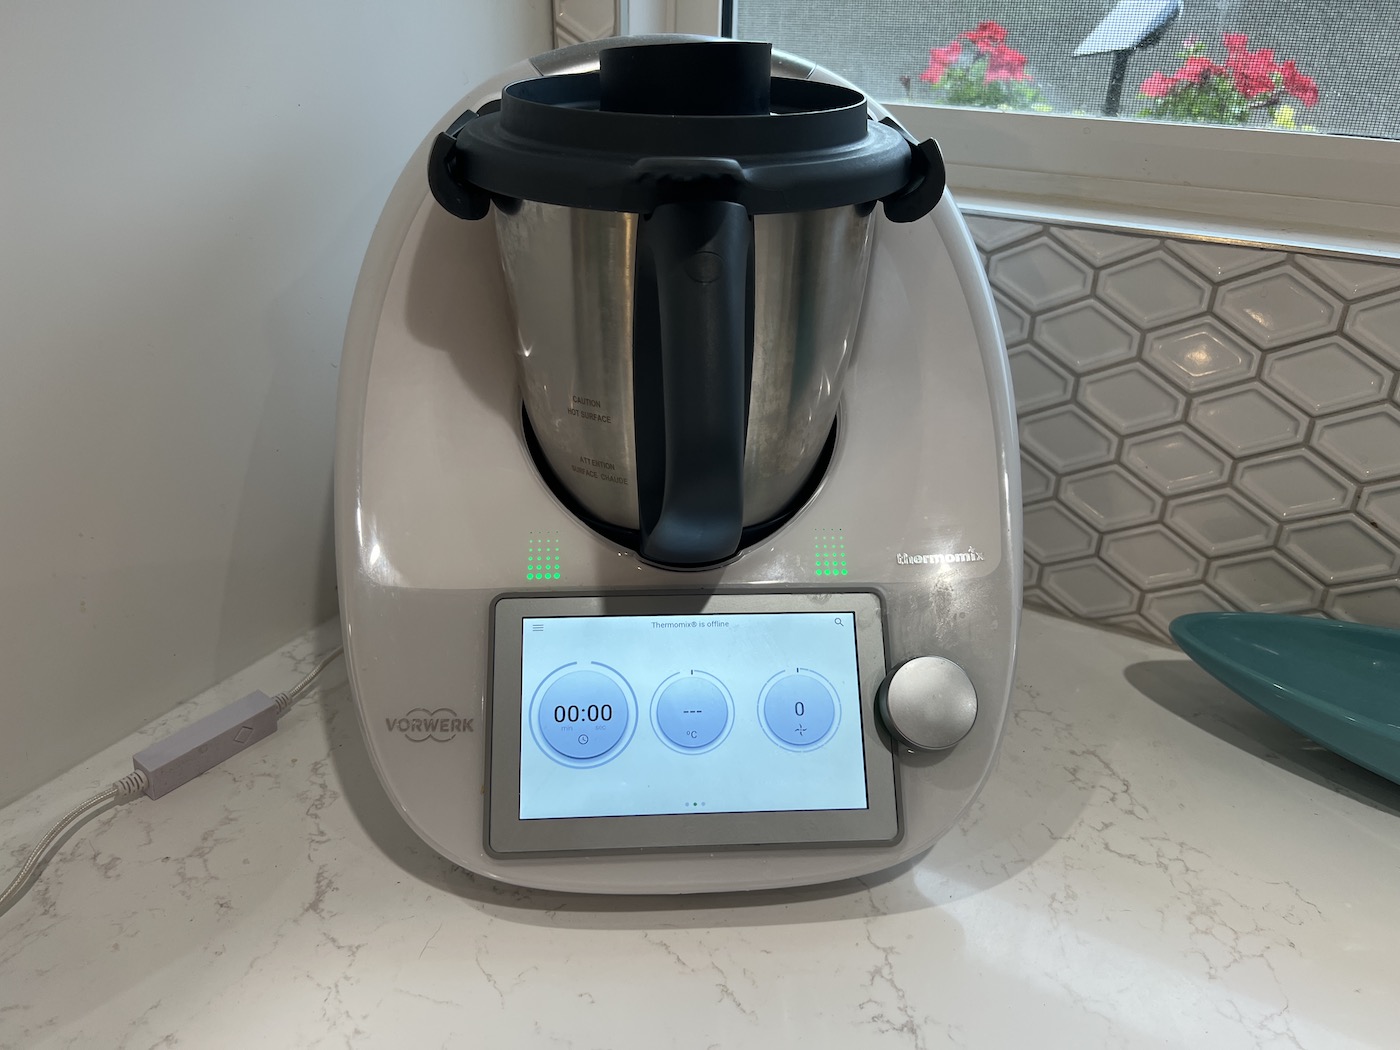 følgeslutning Slagter Bule Thermomix TM6 cooking robot review | Digital Trends